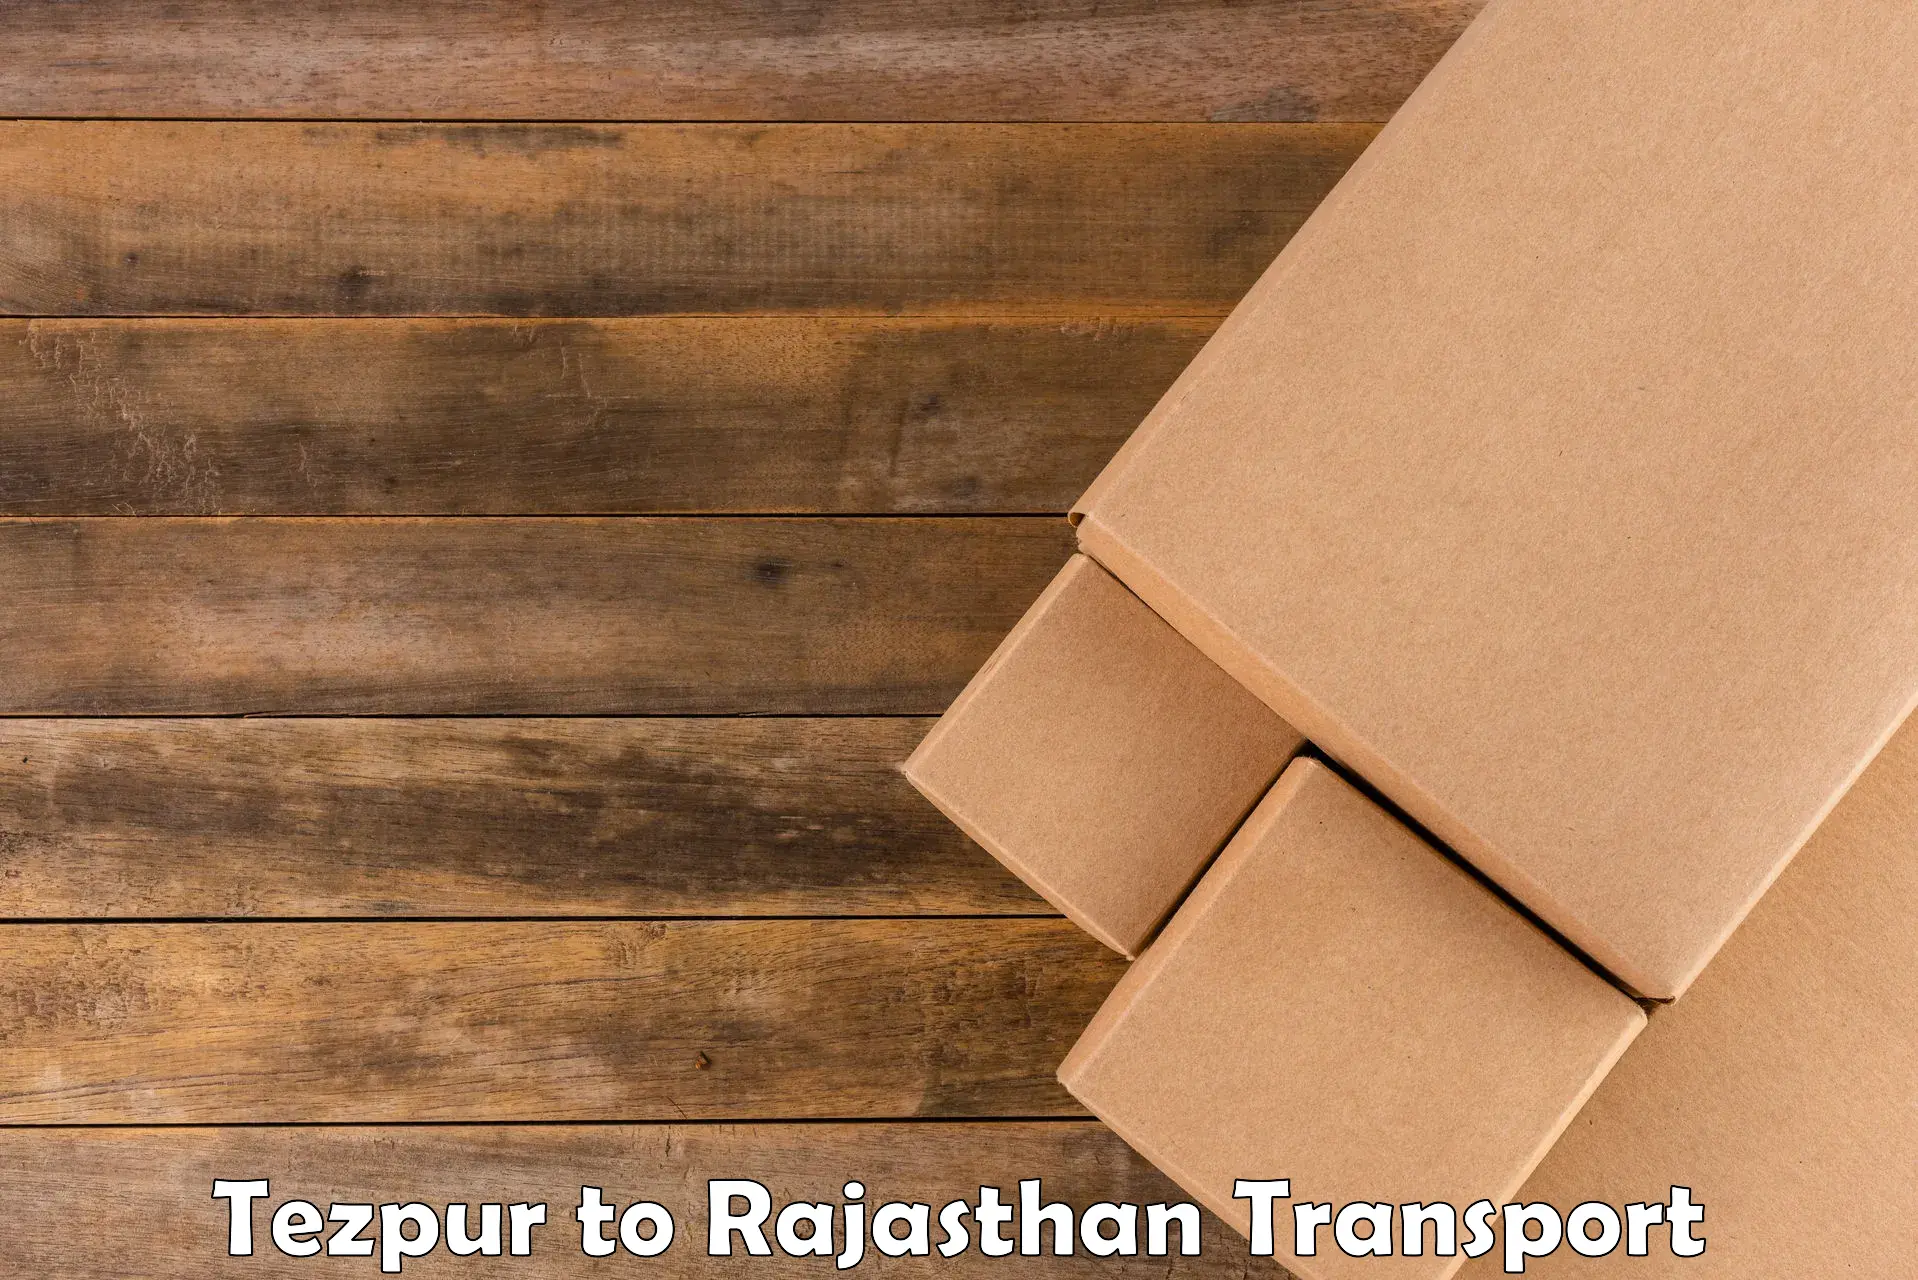 Bike shipping service Tezpur to Sawai Madhopur